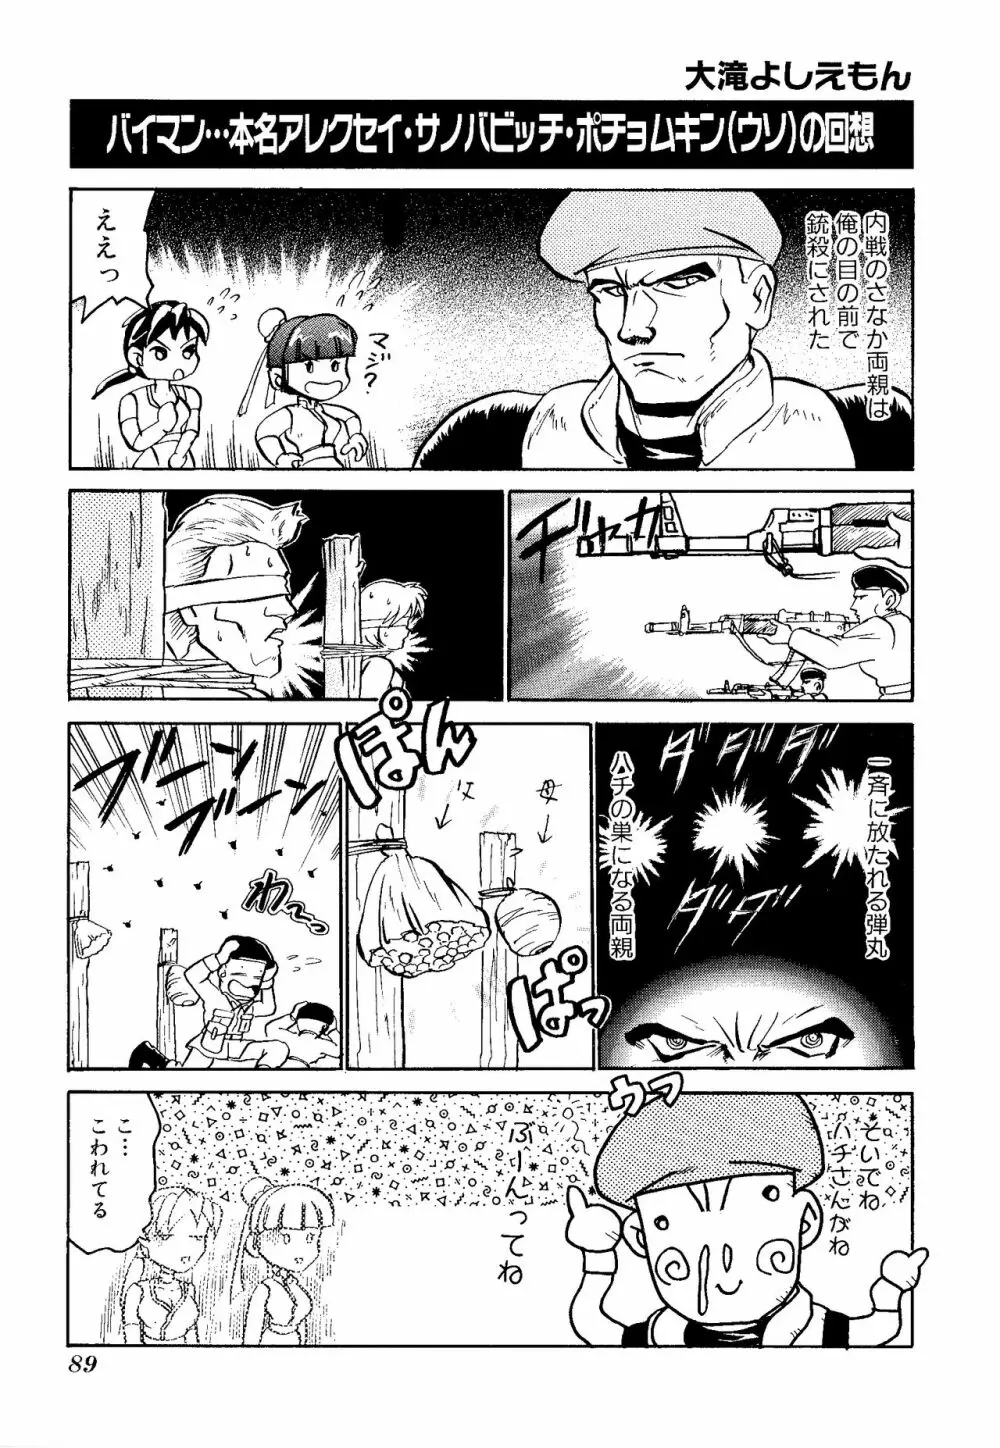 ゲームギャグ1Pコミック : デッドオアアライブ編 1997 91ページ